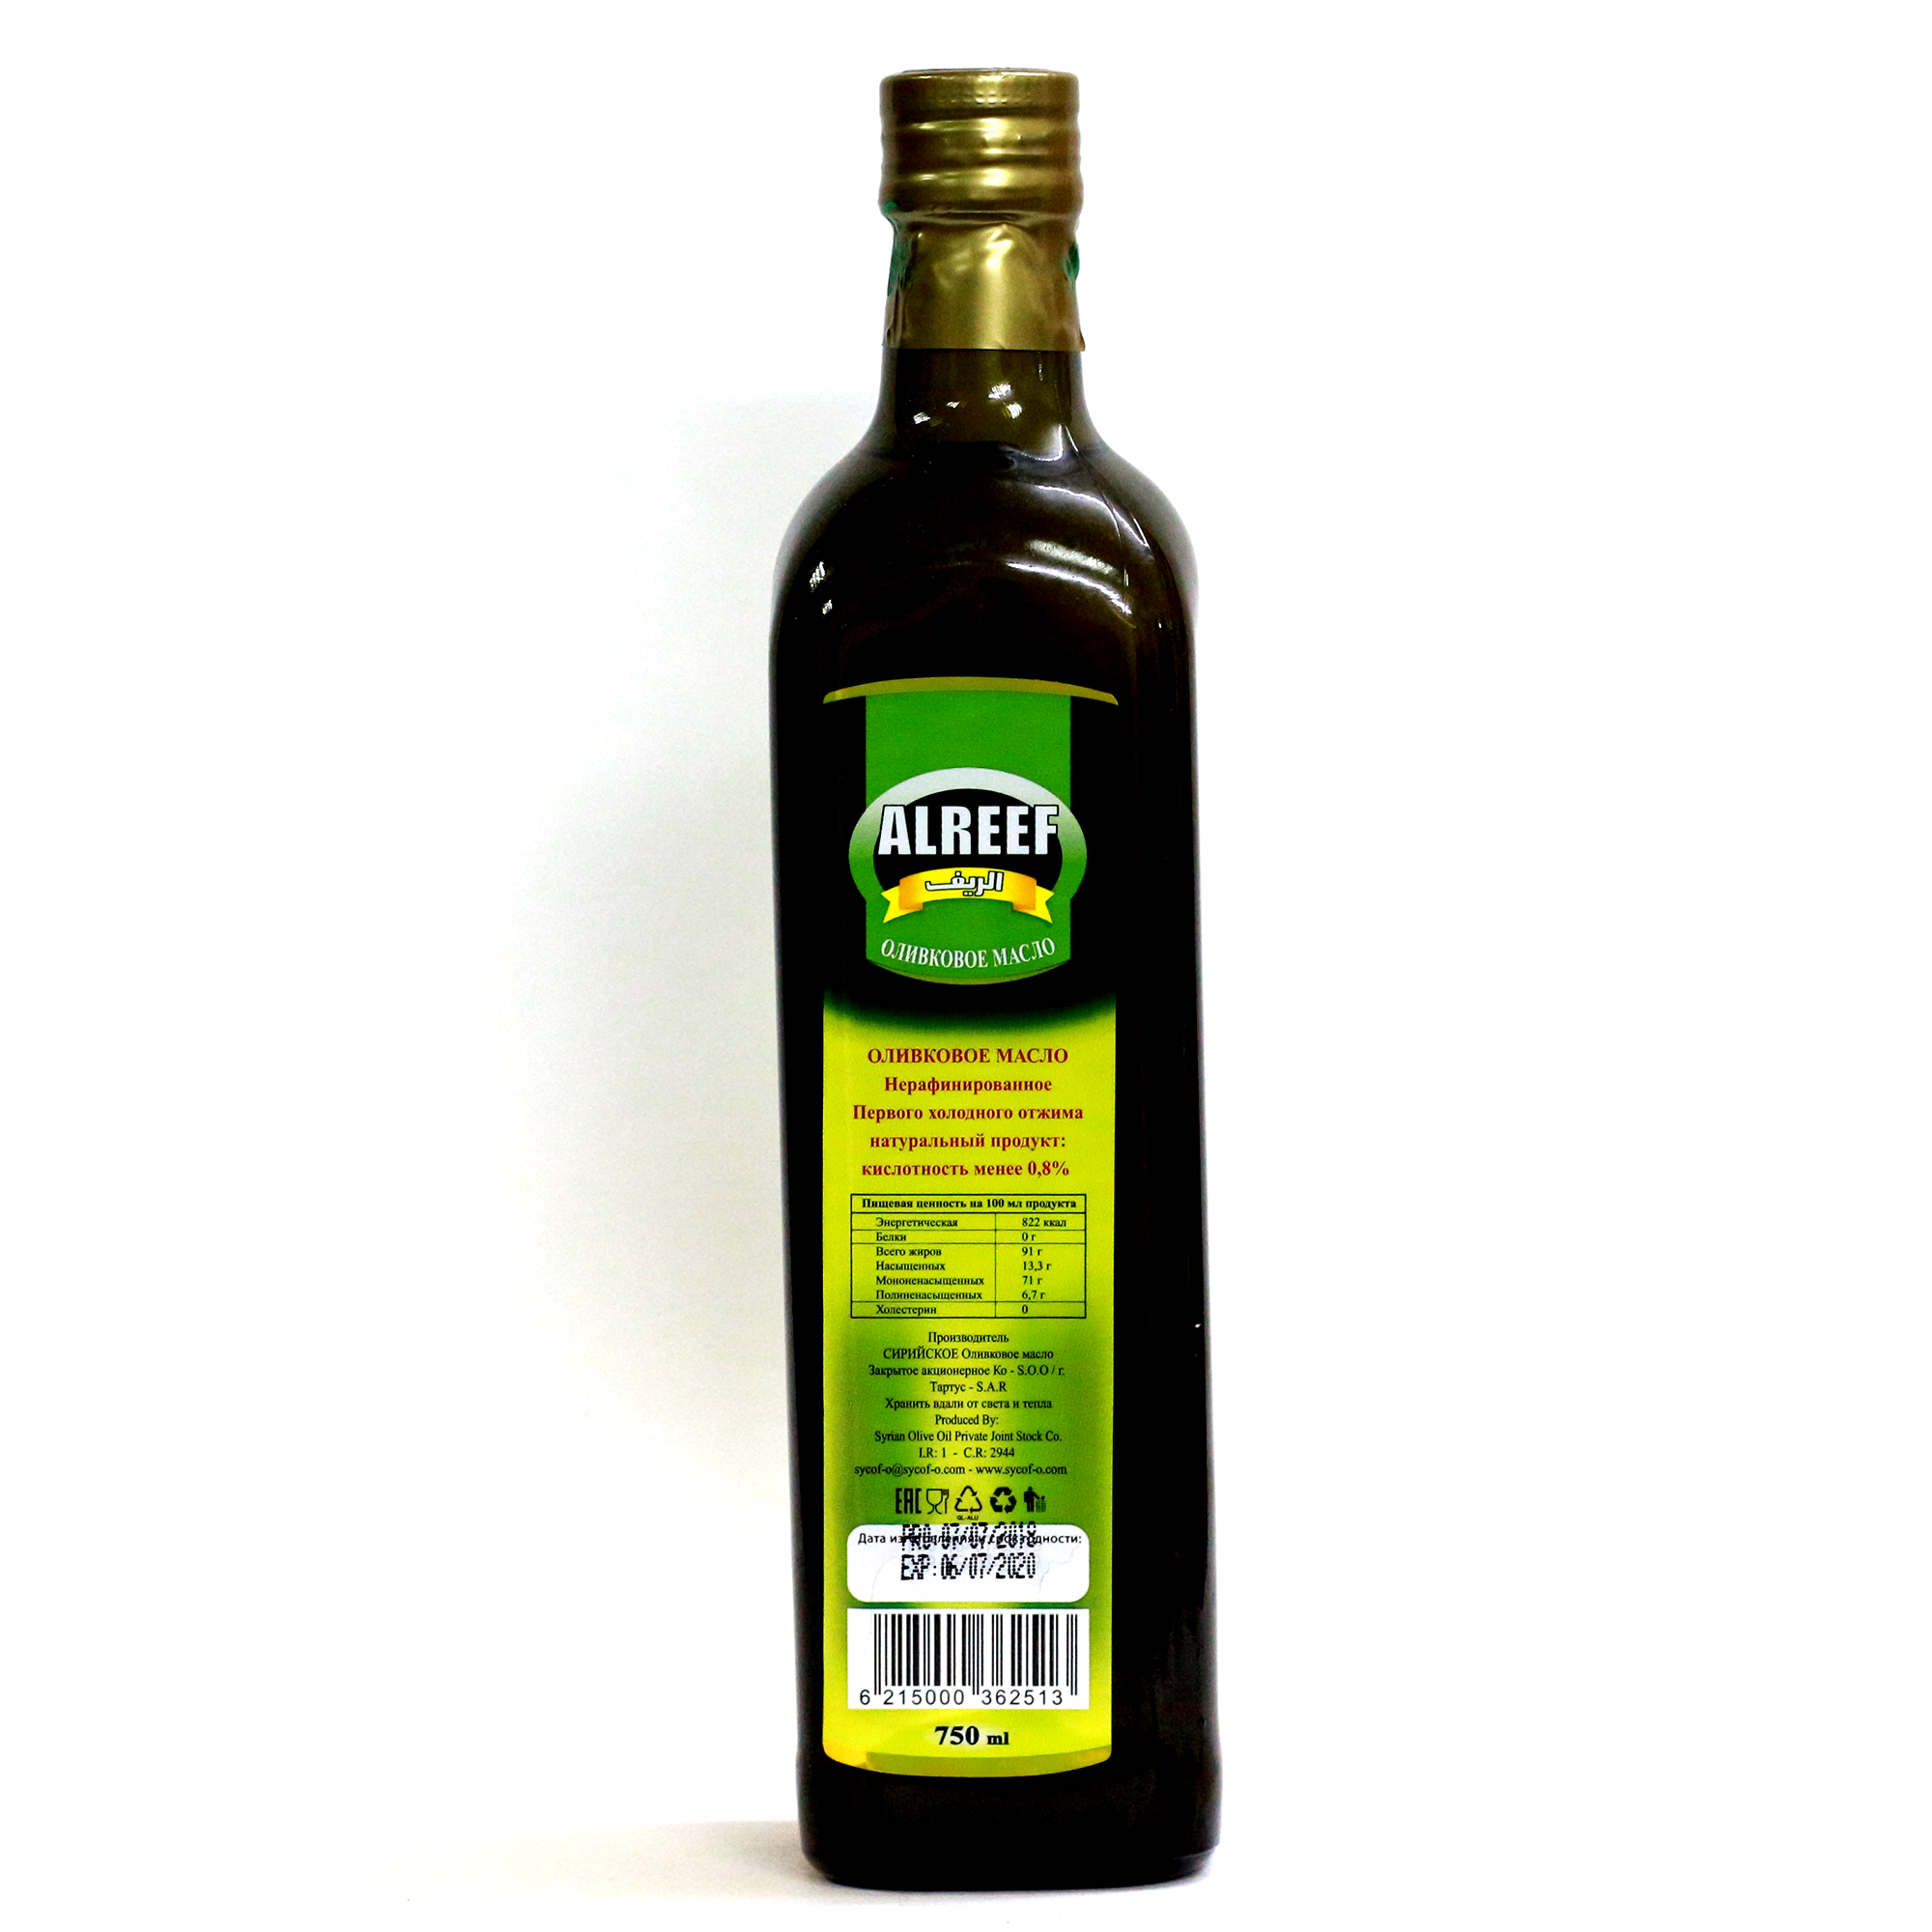 Жарить на оливковом масле холодного отжима. Оливковое масло Extra Virgin Olive Alreef. Оливковое масло Alreef 500 ml. Оливковое масло холодного отжима Extra Virgin. Оливковое масло Экстра Вирджин холодного отжима.